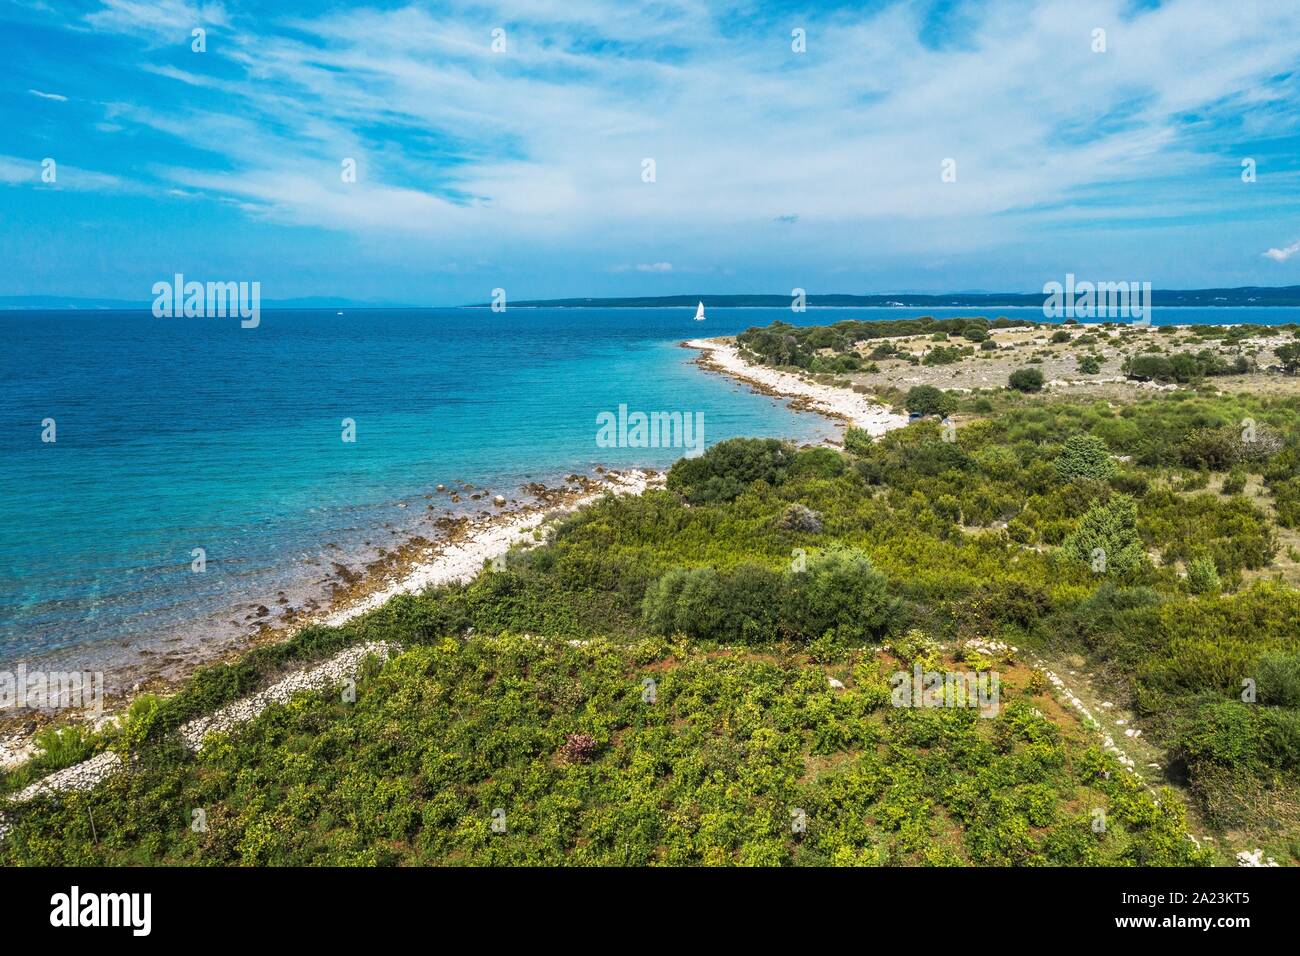 Dorf Lun, Insel Pag malerischen Strand Luftaufnahme. Lika Senj, Kroatien. Mediterrane Landschaft. Stockfoto